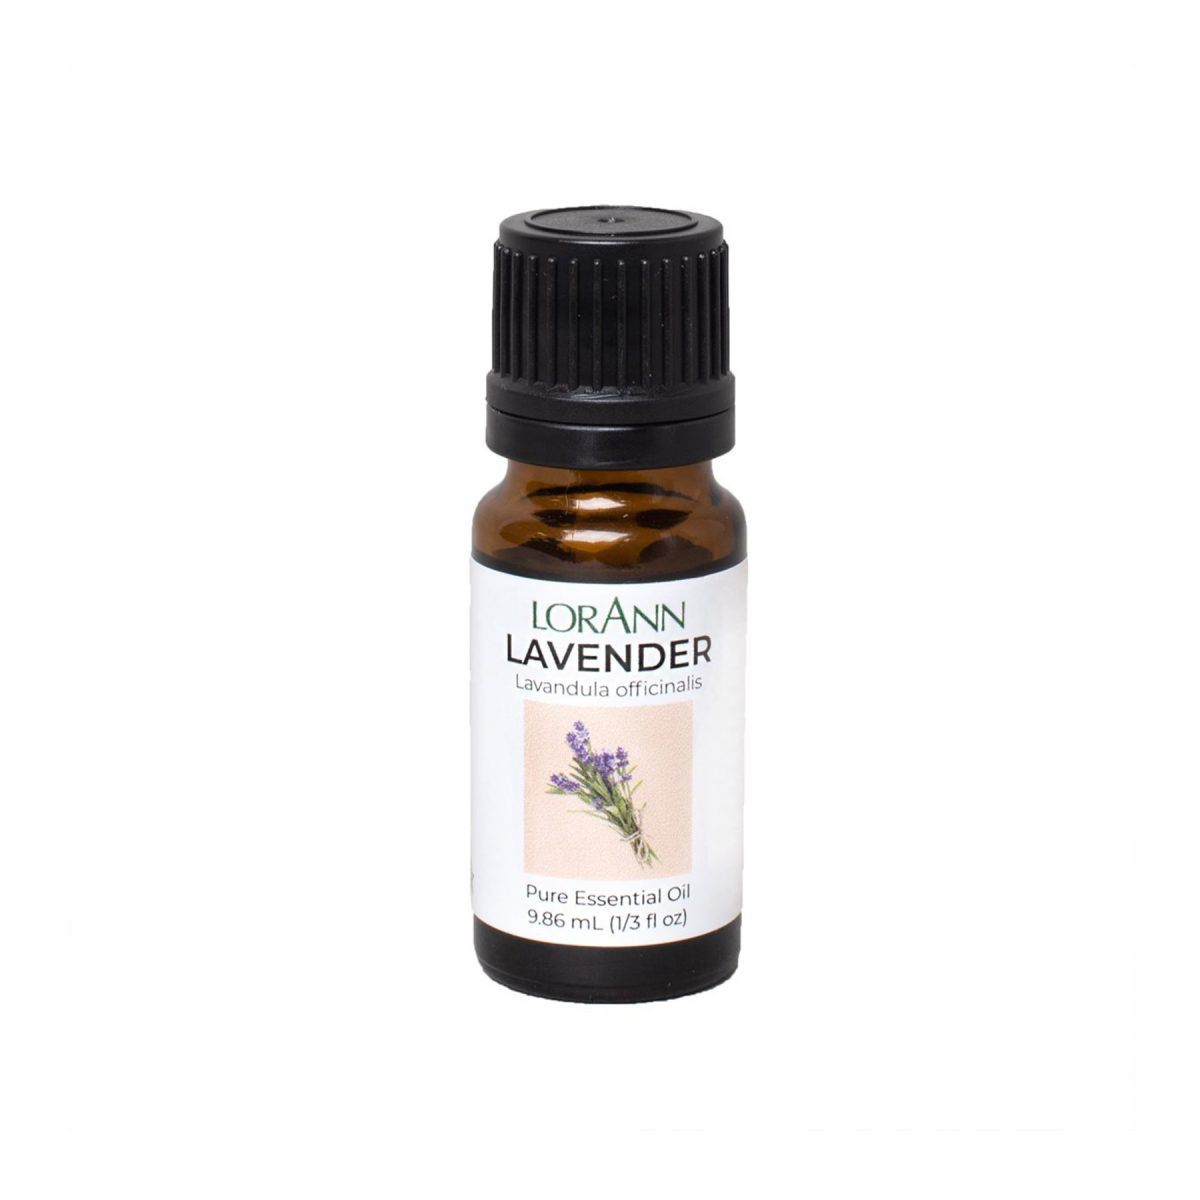 lorann-lavender-natural-oil-9.86ml